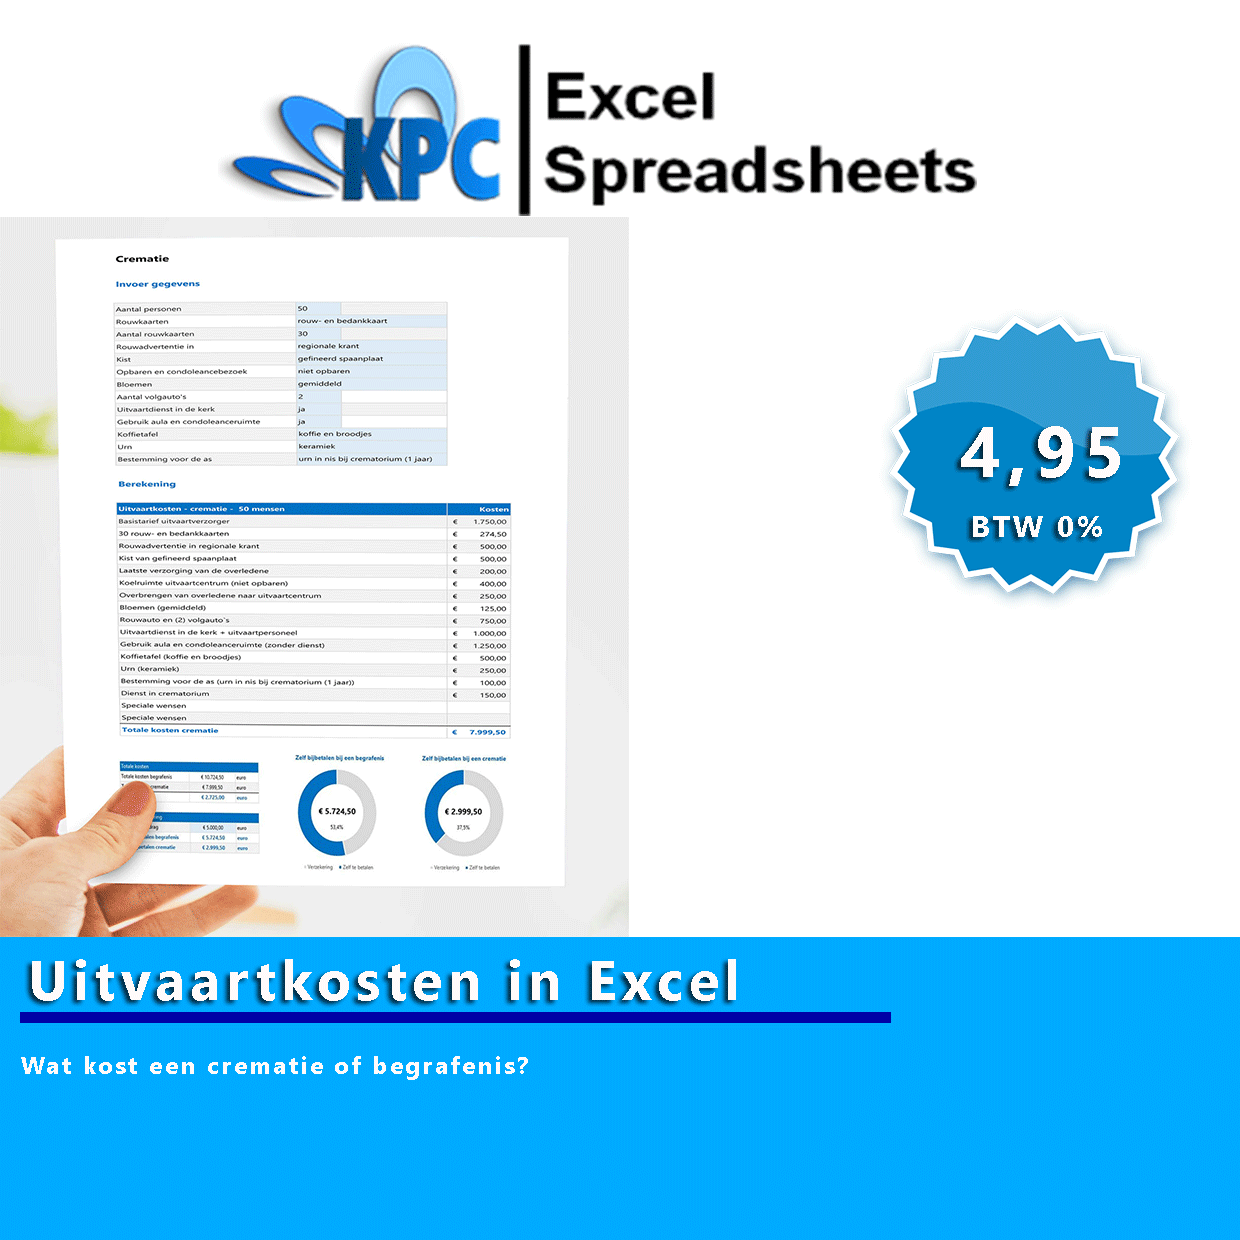 Uitvaartkosten-in-Excel-promo